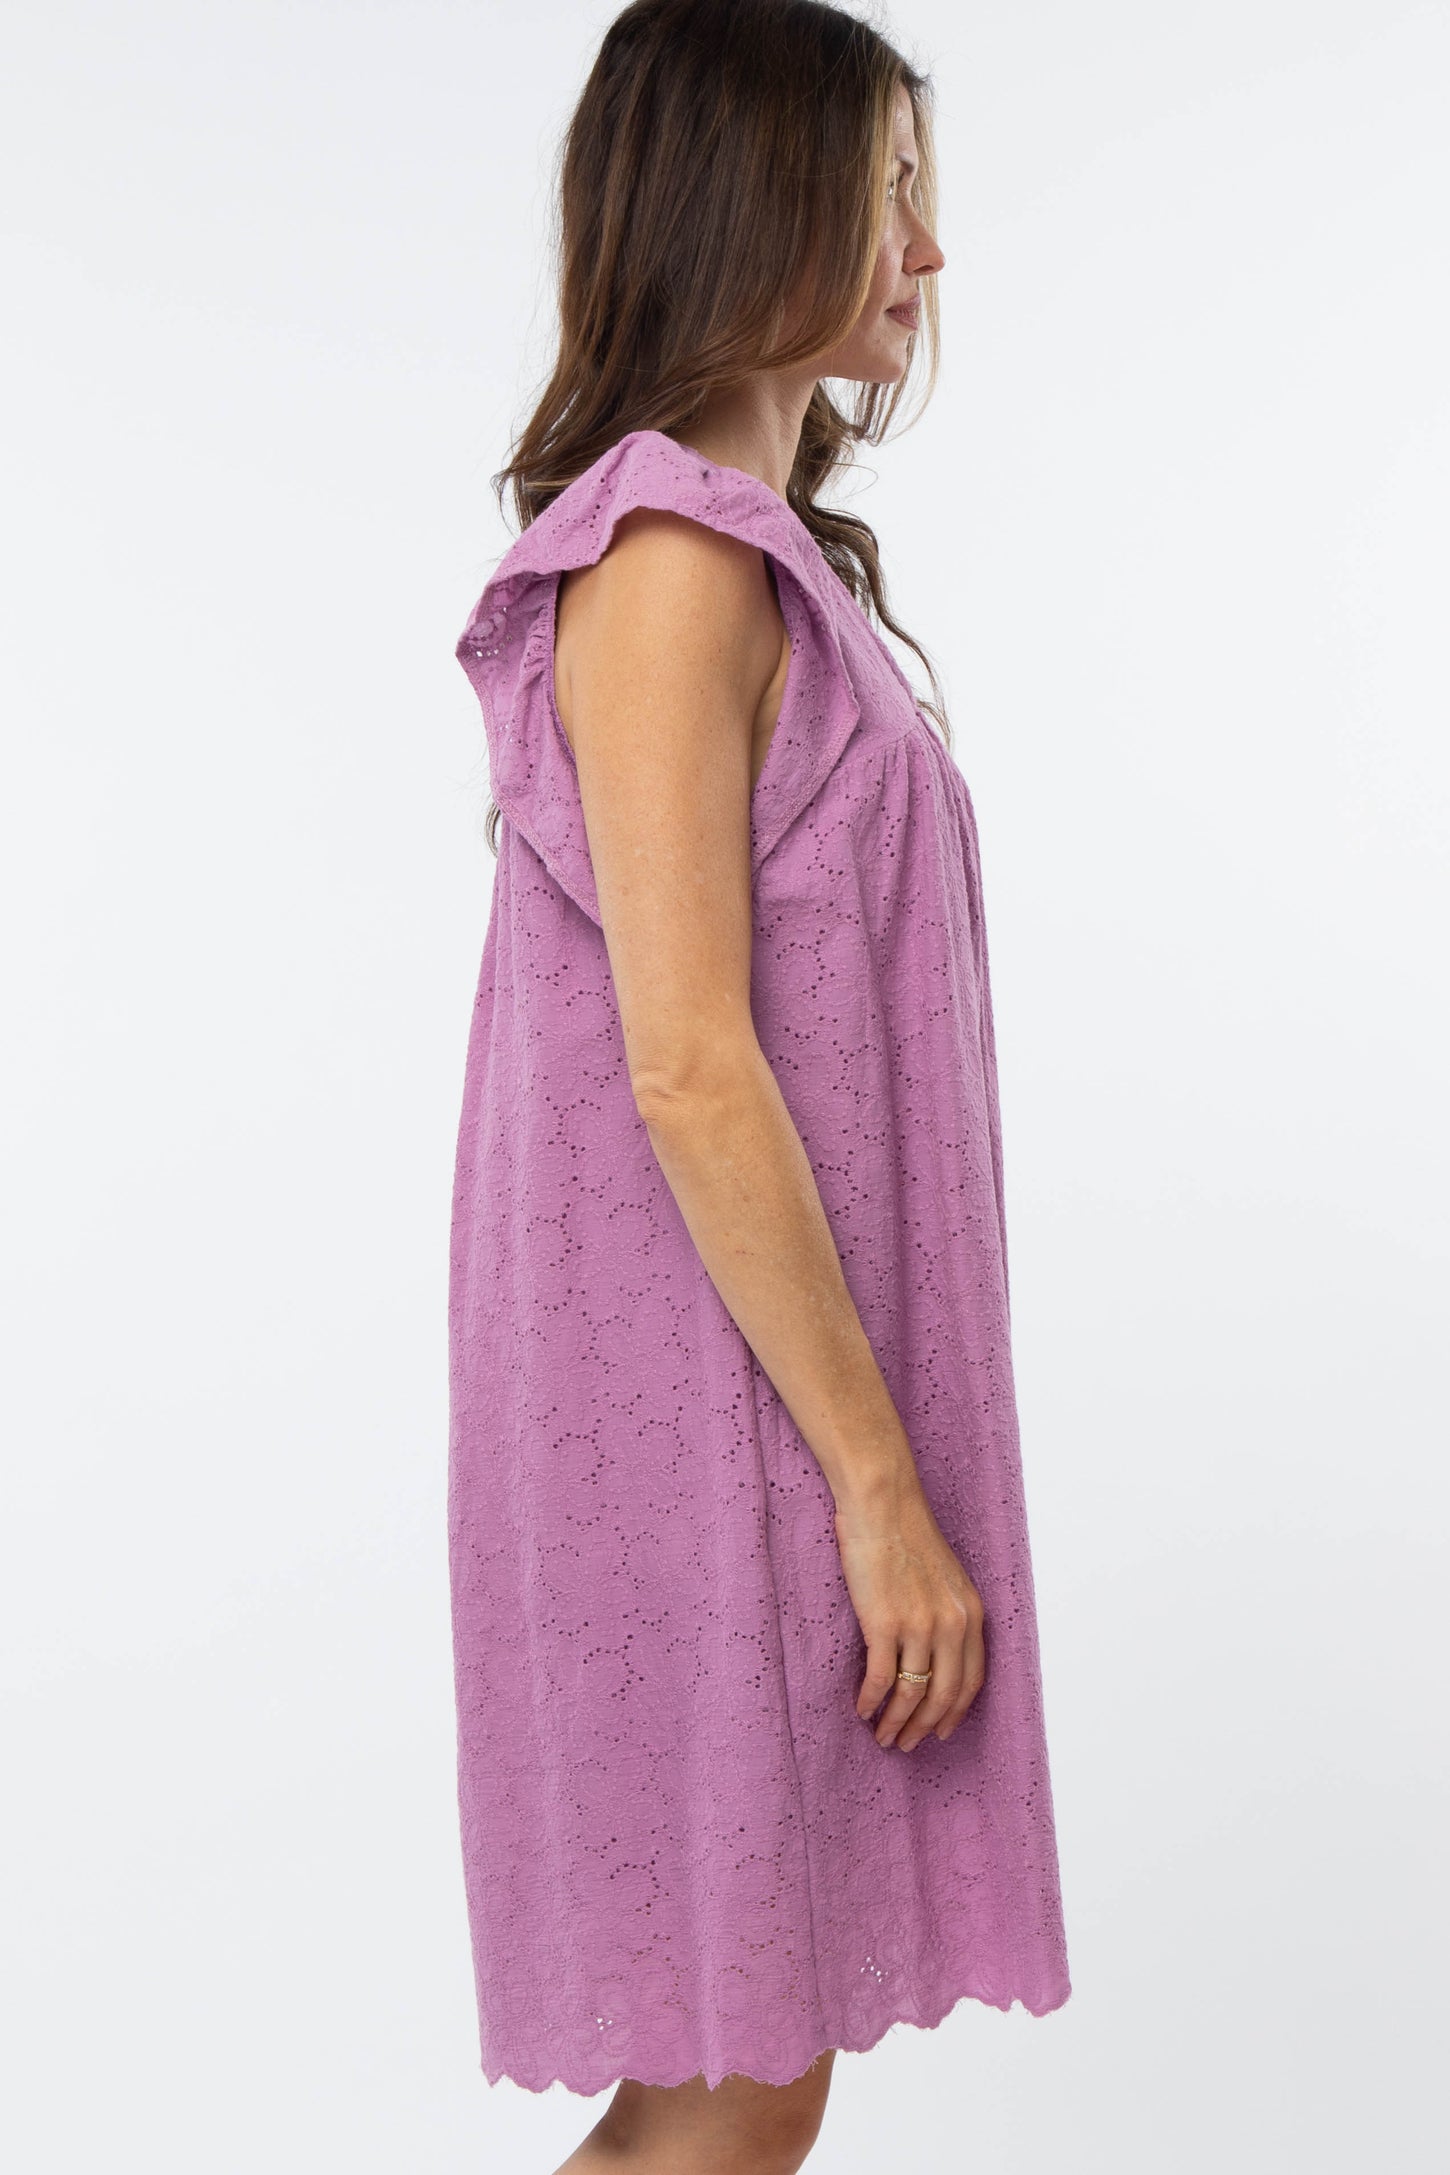 Violet Eyelet Dress